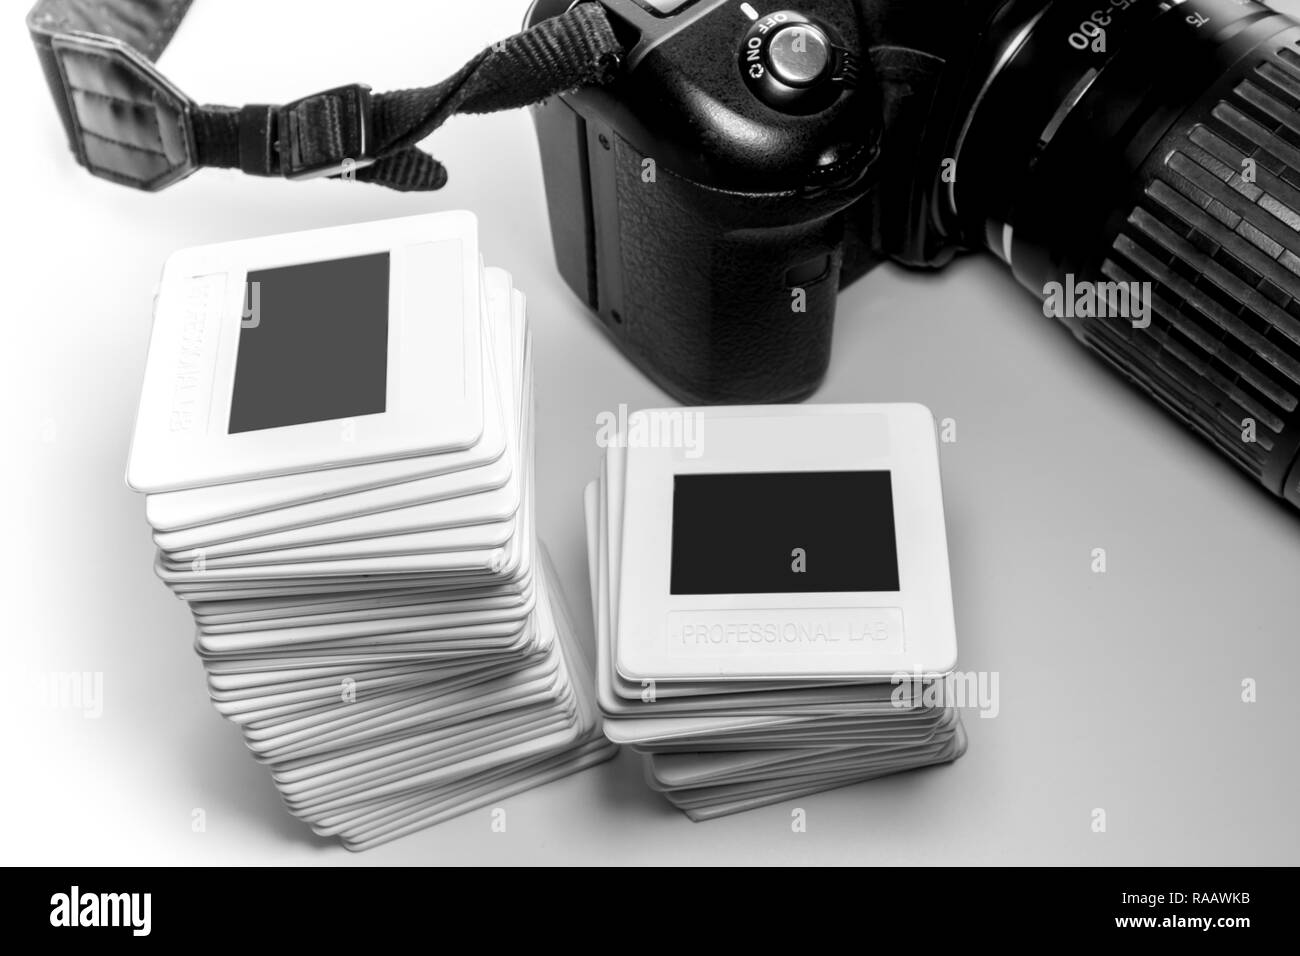 Stapel alte Umkehrung Diafilm in Kunststoffrahmen und Teil der Kamera  Stockfotografie - Alamy